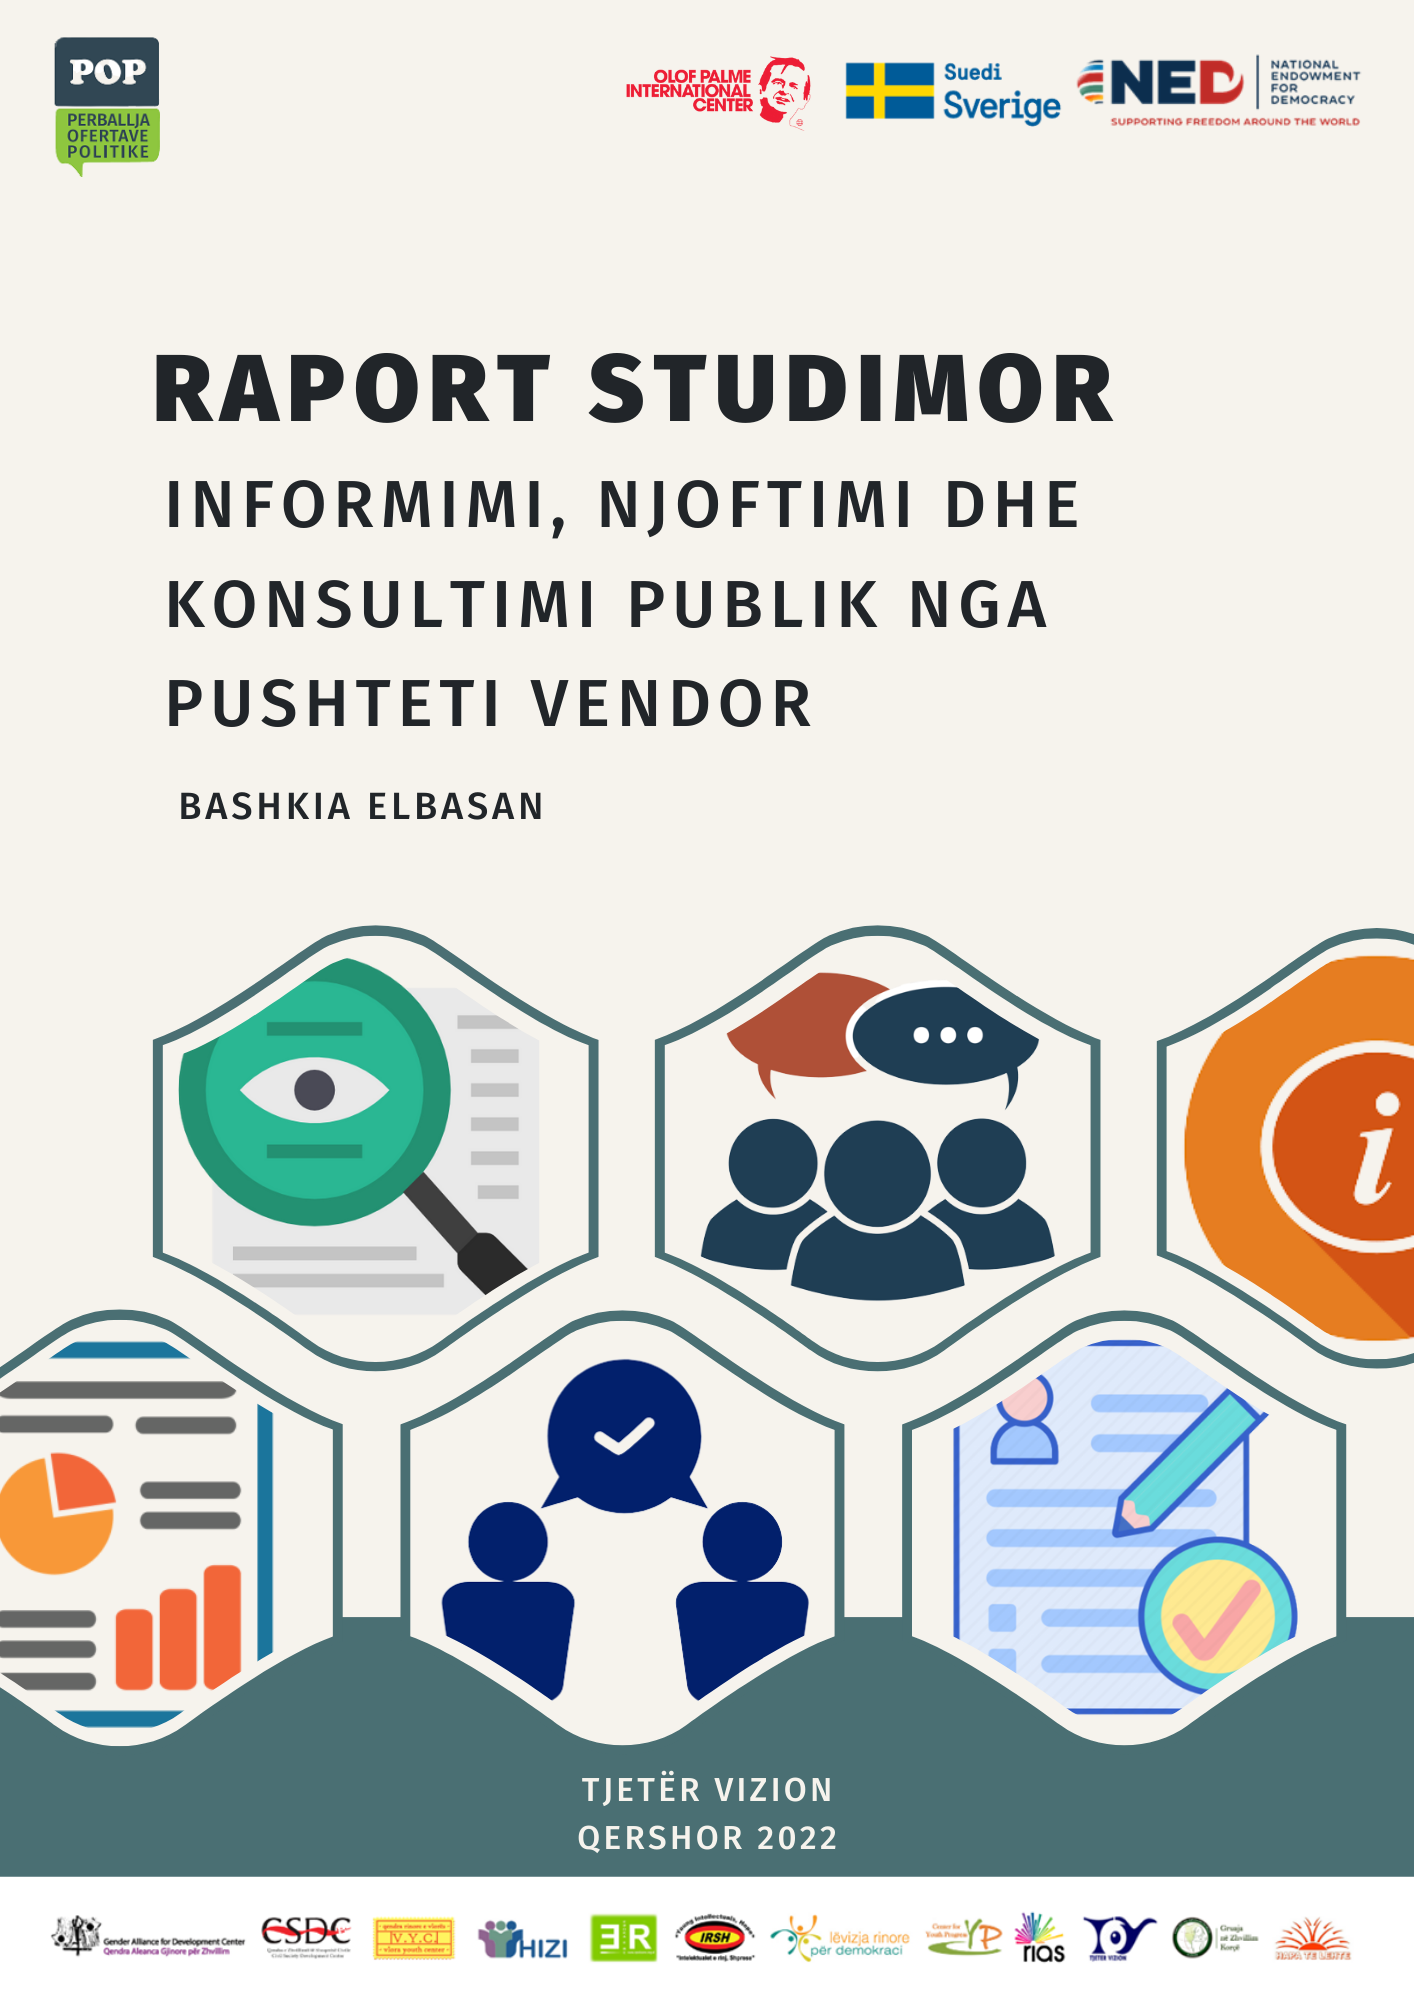 Raporti studimor “Informimi, Njoftimi dhe Konsultimi Publik” – Bashkia Elbasan